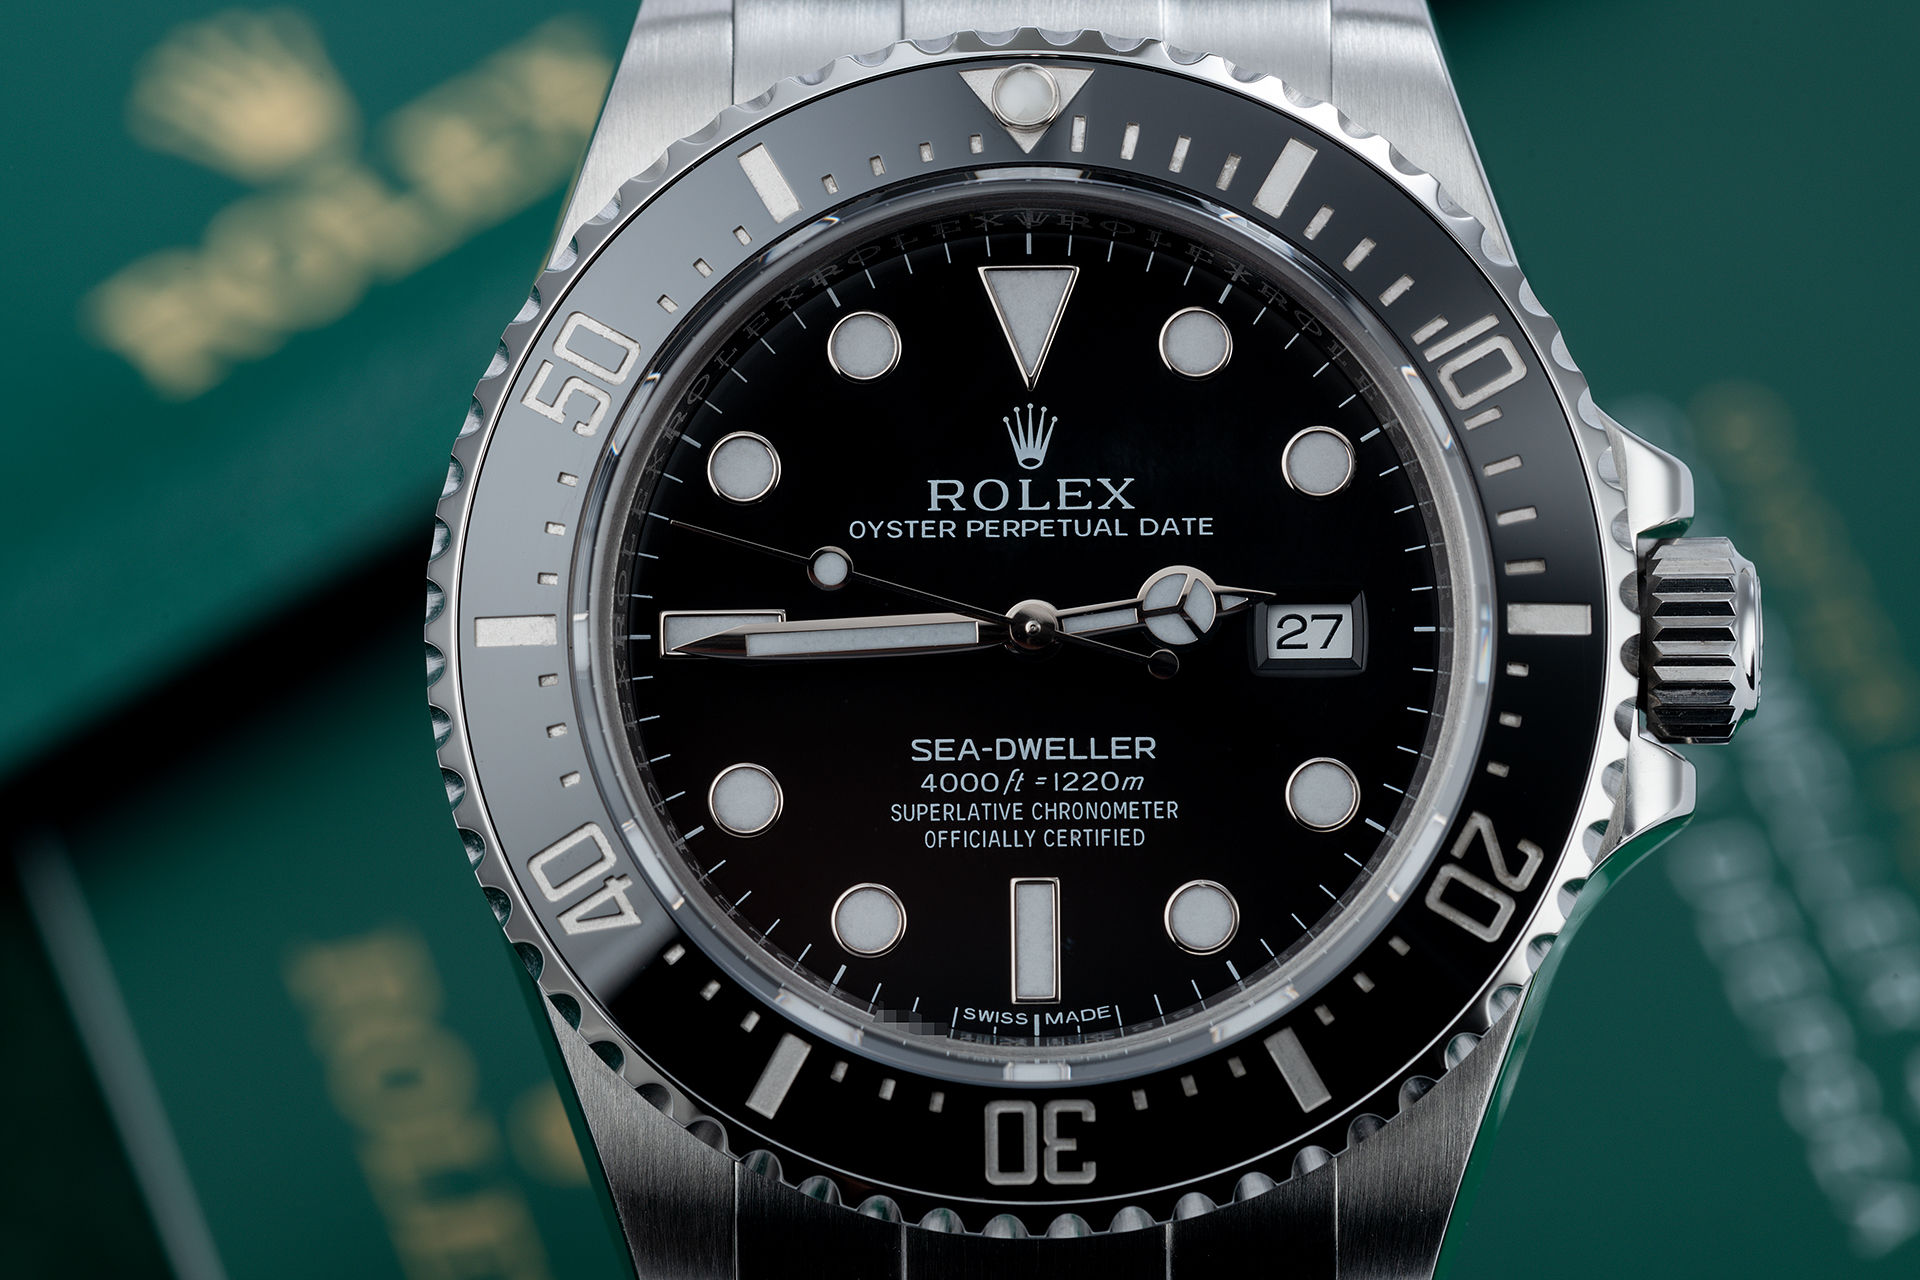 ref 116600 | Complete Set 'Under Rolex Service Warranty' | Rolex Sea-Dweller 4000